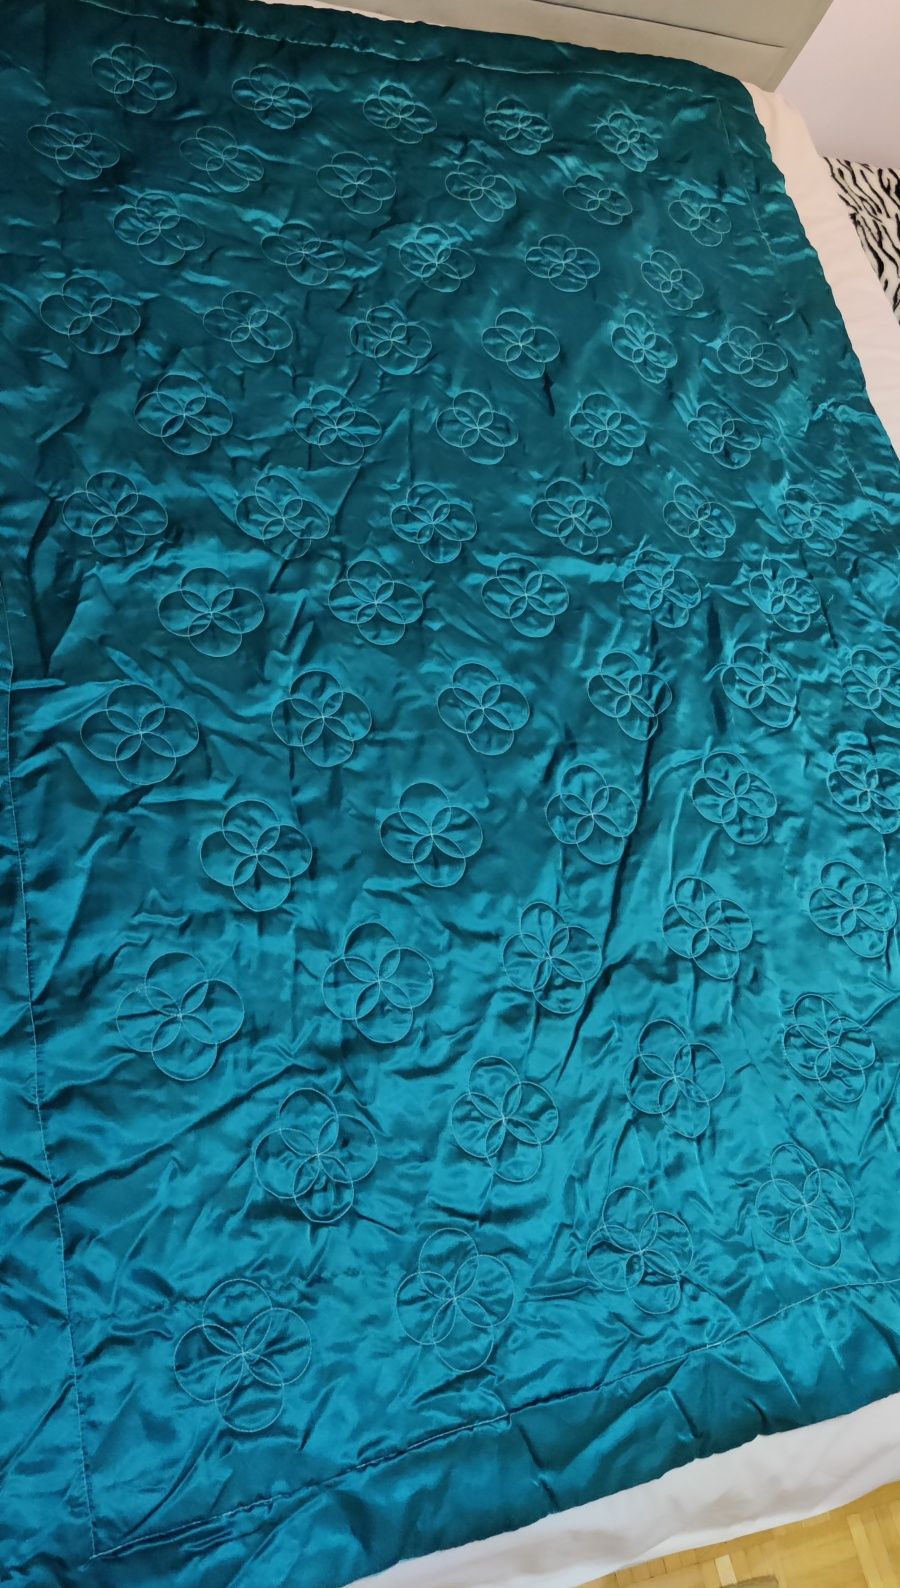 Narzuta dwustronna niebieska błękitna kołdra 1,35 x 1,95 m duży koc